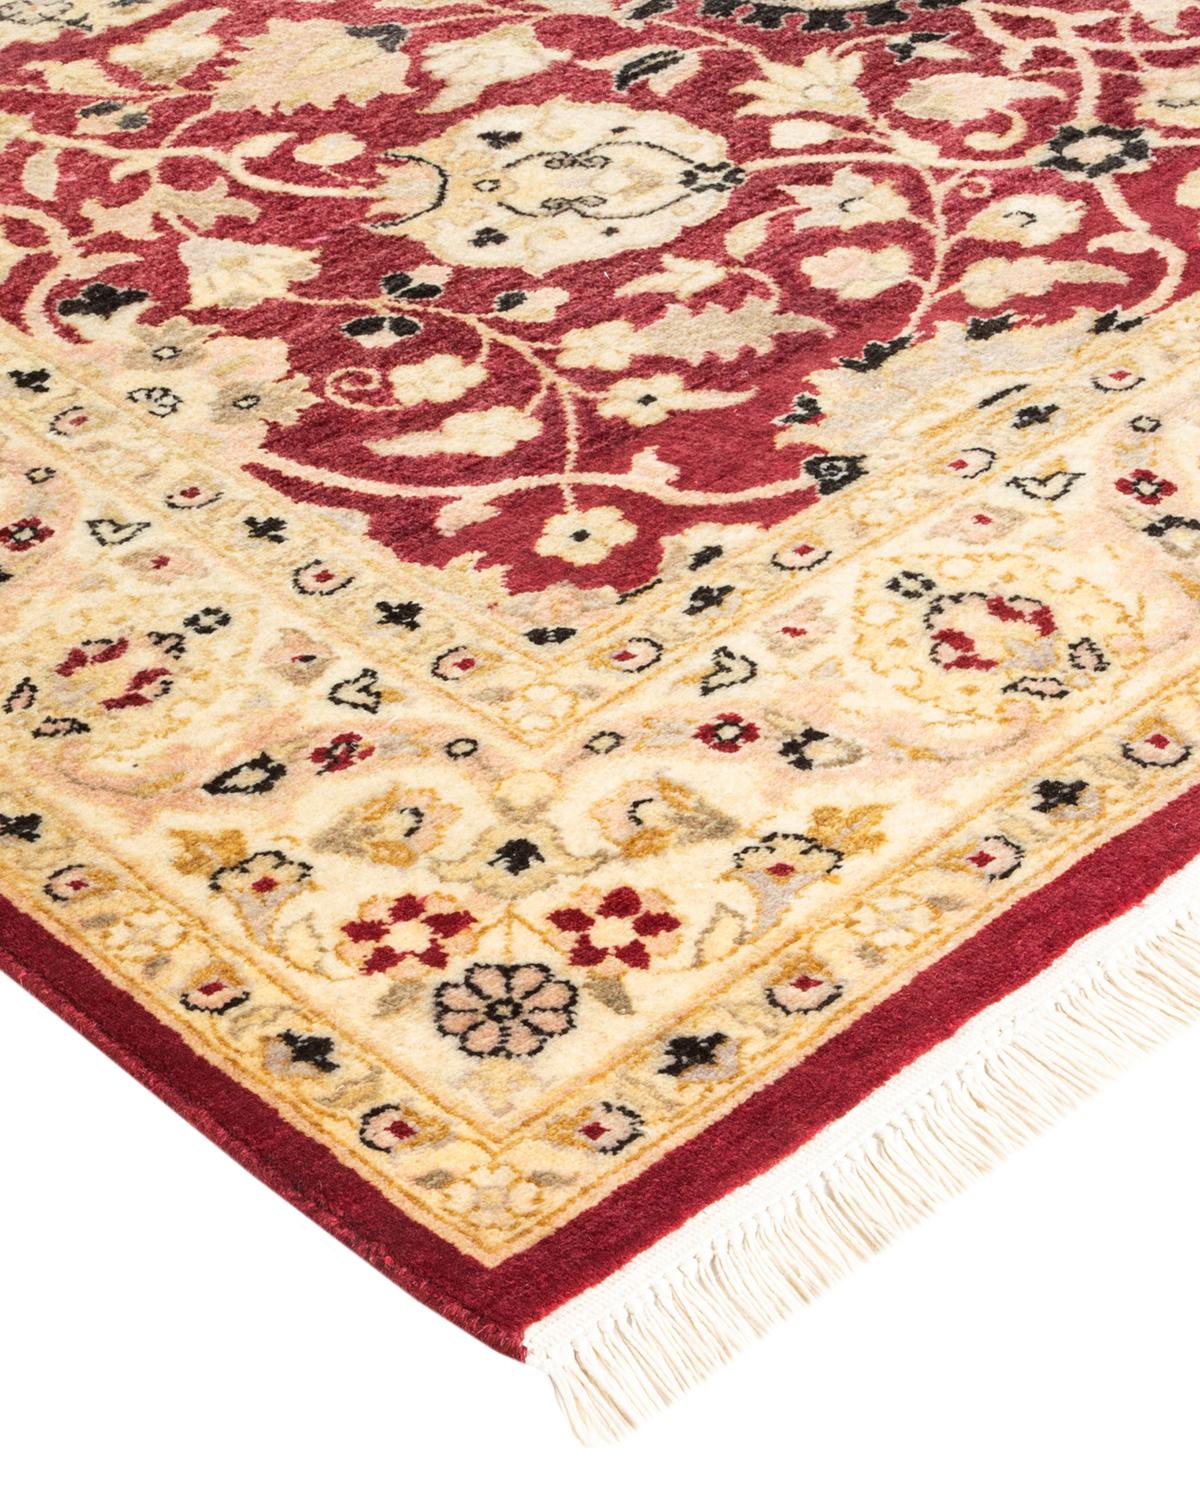 Avec leurs palettes discrètes et leurs motifs à l'envers, les tapis de la collection Mogul apporteront une sophistication intemporelle à n'importe quelle pièce. Influencés par un éventail de motifs turcs, indiens et persans, les artisans qui tissent